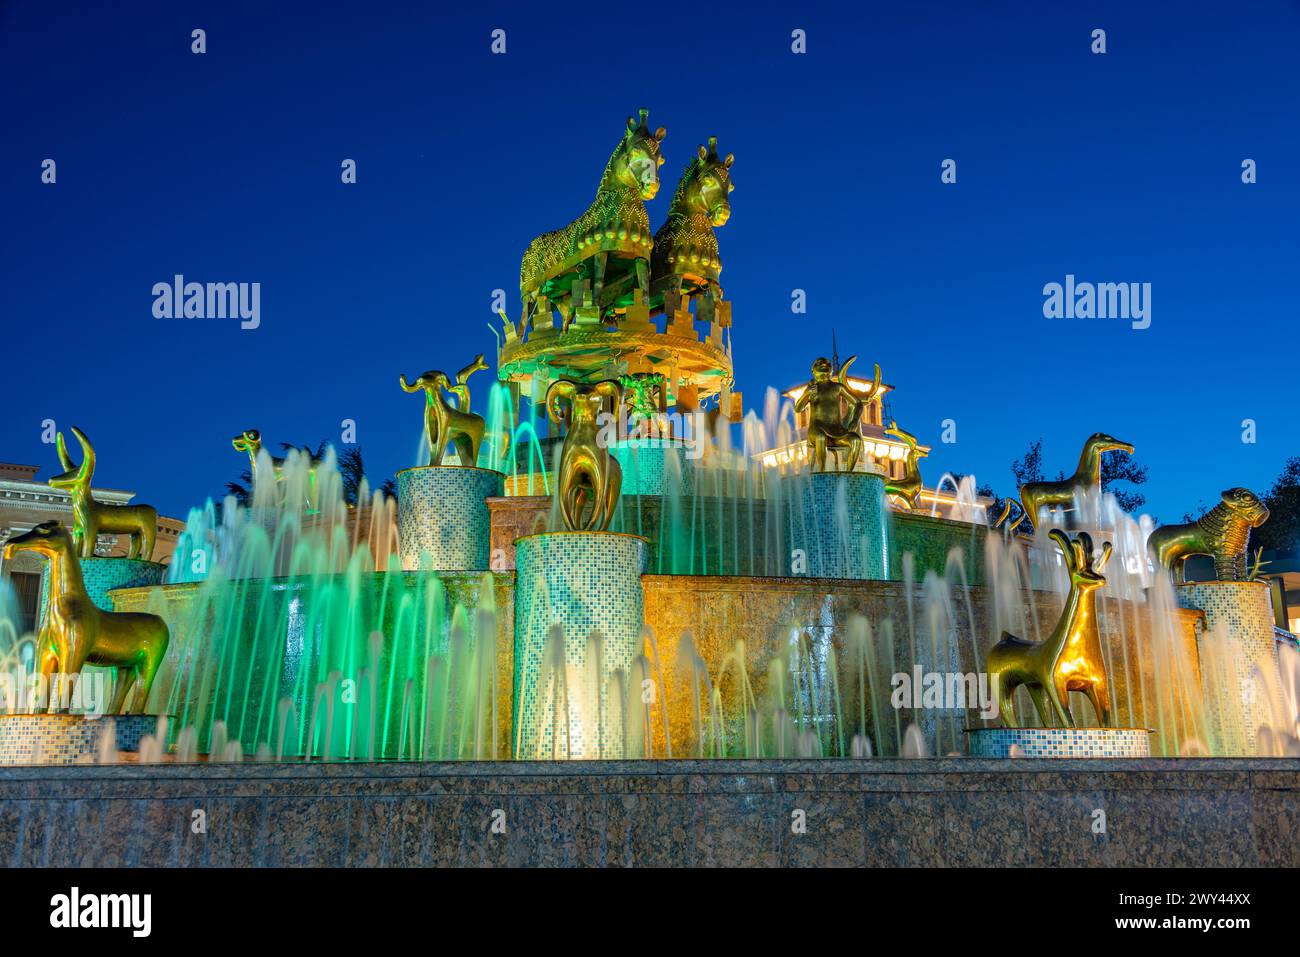 Vue de nuit de la fontaine Colchis à Kutaisi, Géorgie Banque D'Images